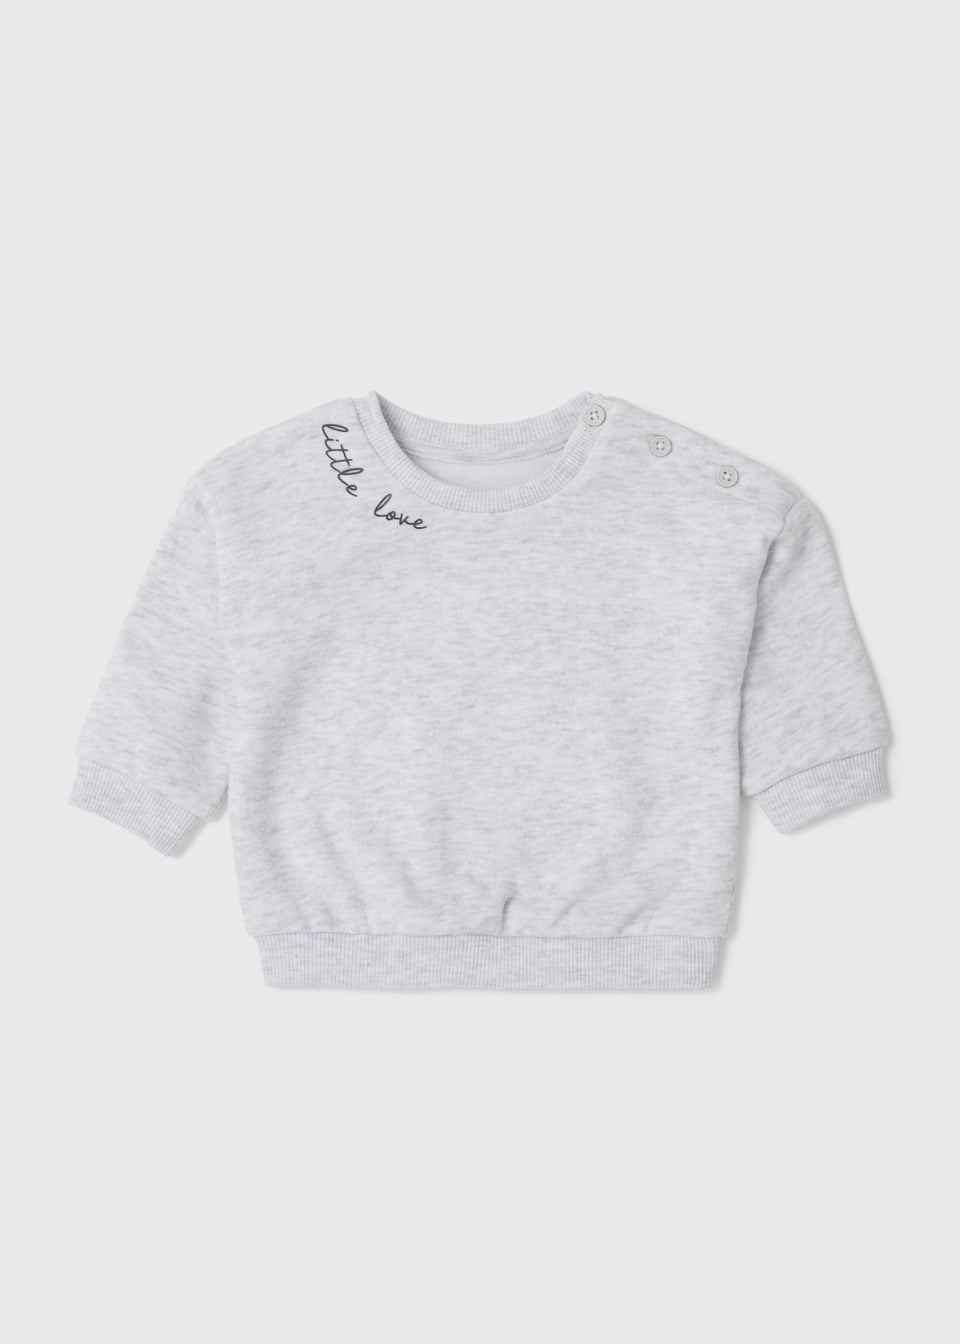 Baby Grey Little Love Sweatshirt (Newborn-23mths)